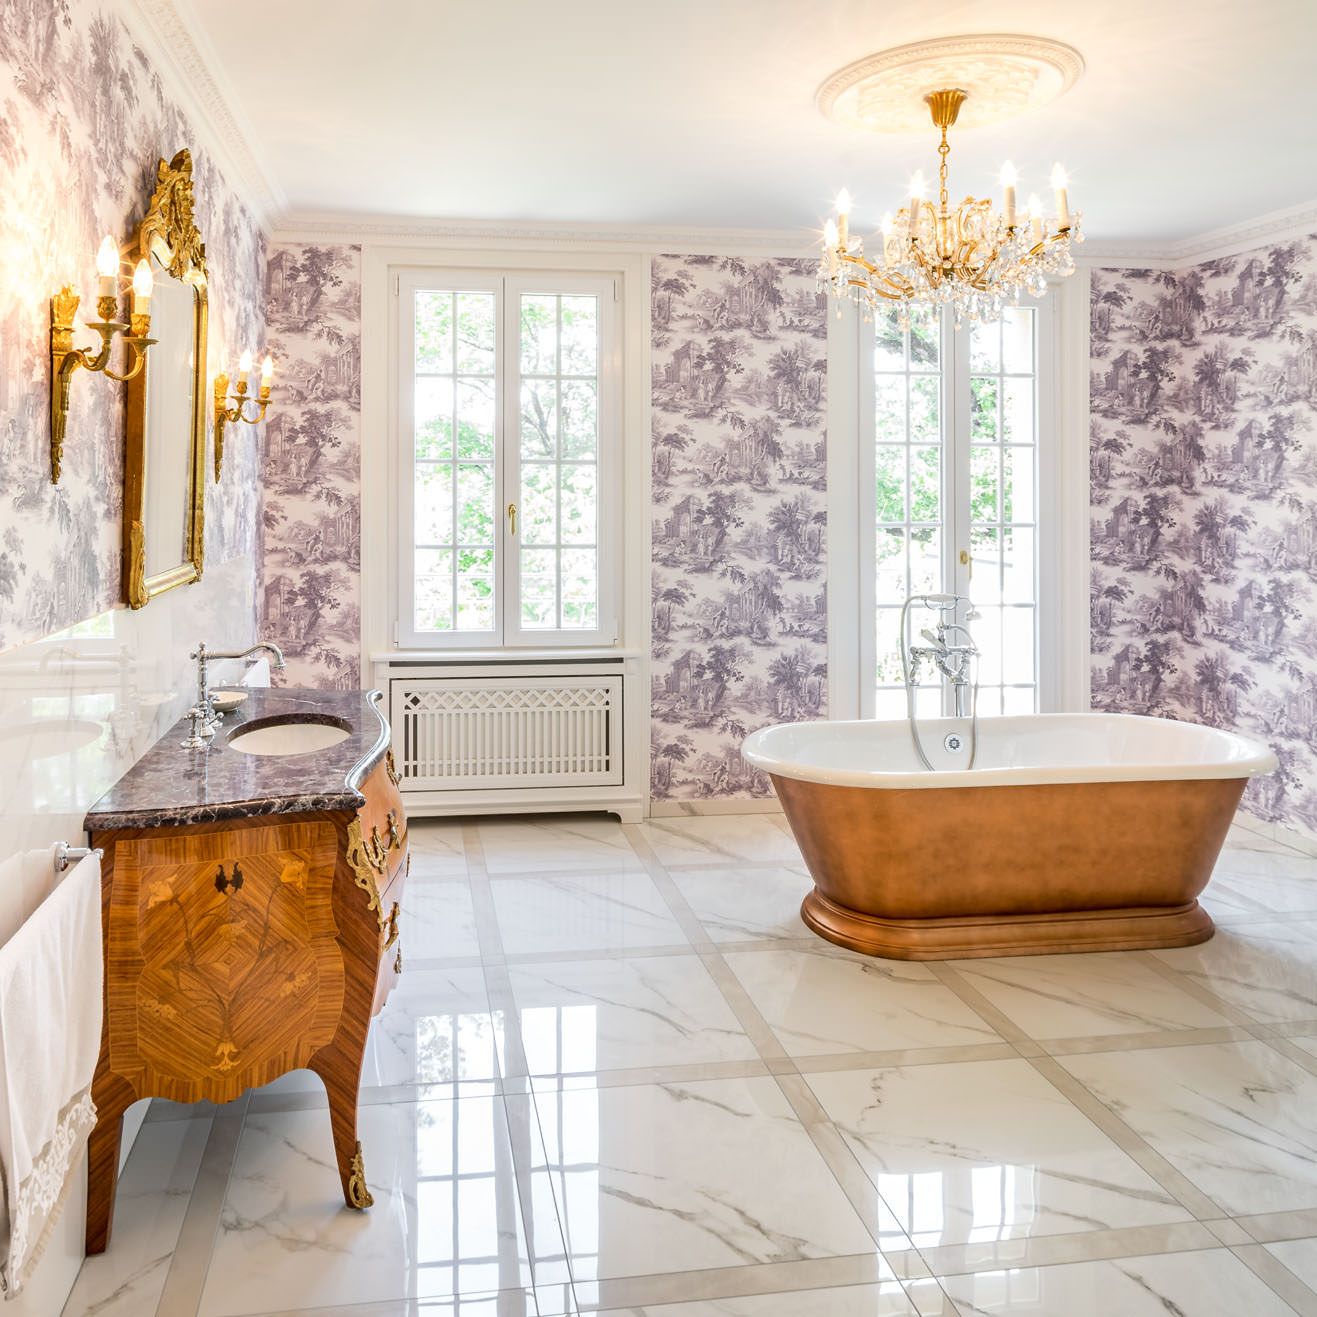 Entdecken Sie unsere Home Story No. 128. Traditional Bathrooms gestaltet kreative französische Bäder mit persönlicher Note. 